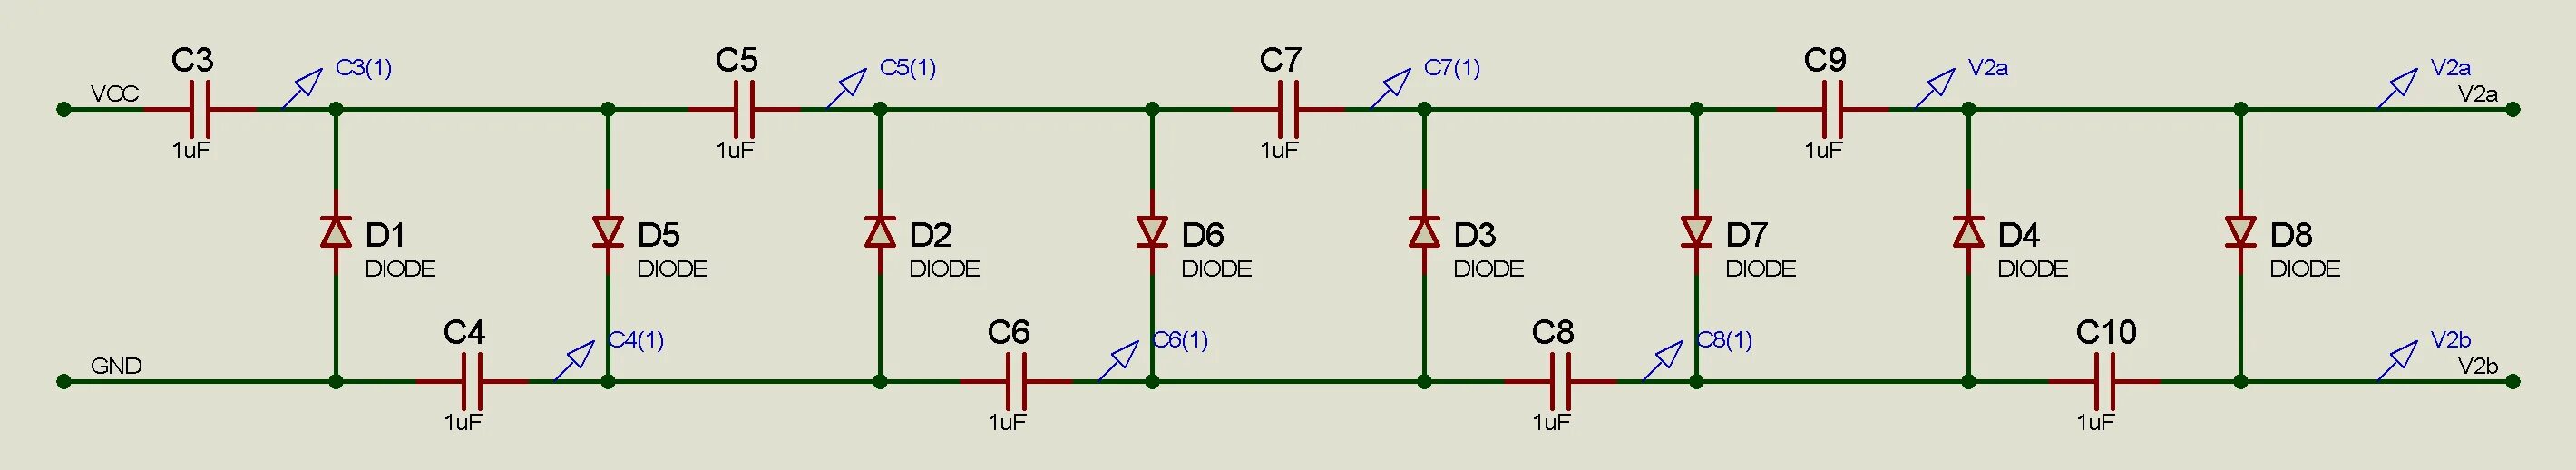 Схема умножителя напряжения на диодах и конденсаторах. Умножитель тока схема. Схема диодного умножителя. Схема учетверения напряжения на диодах и конденсаторах.